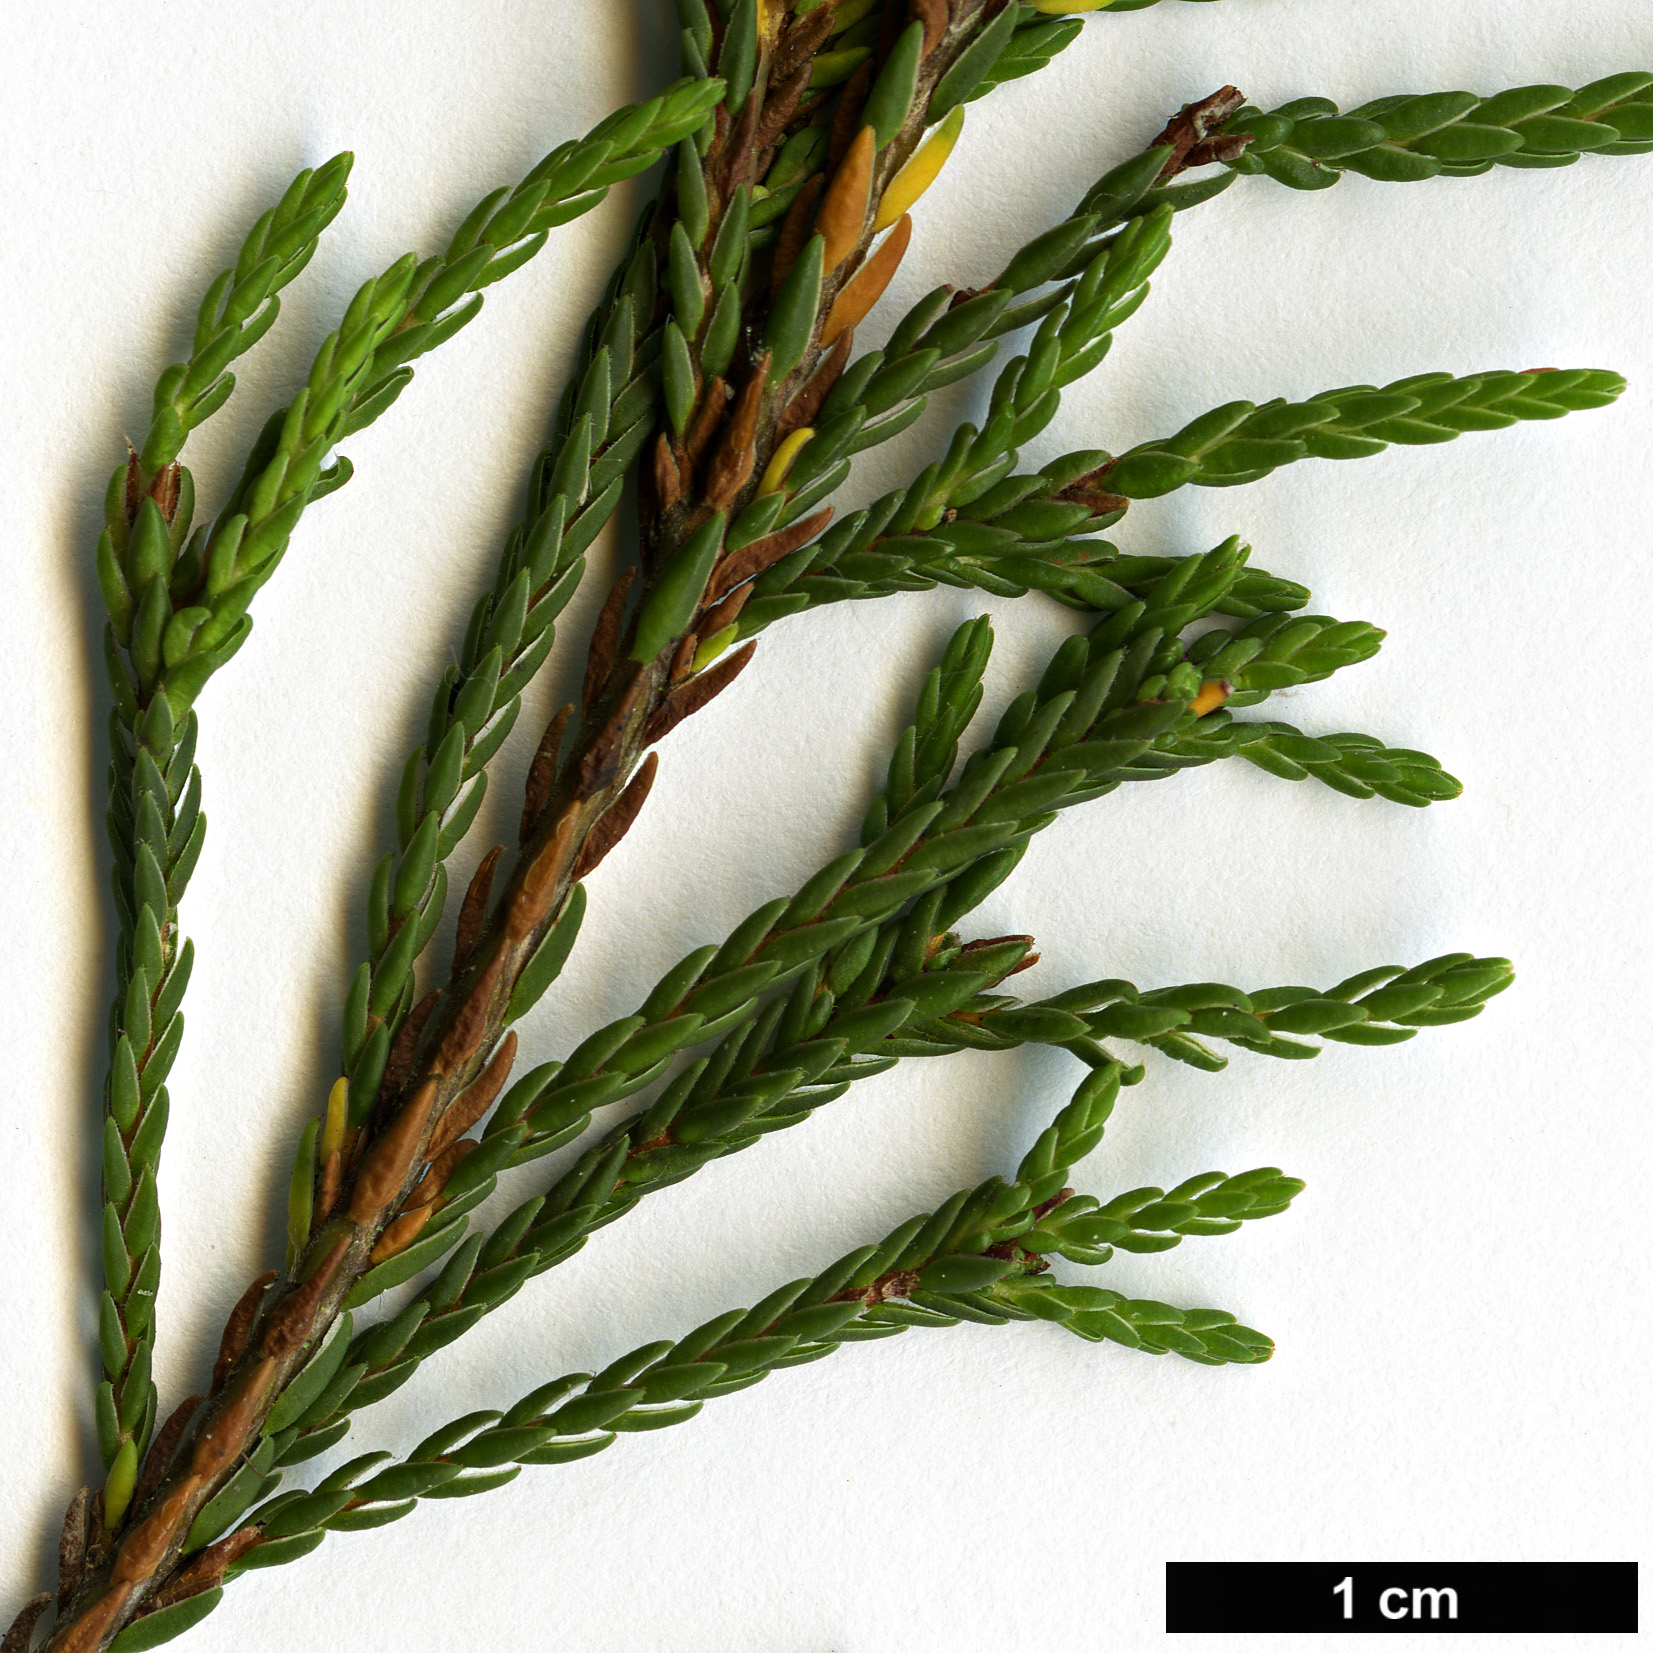 High resolution image: Family: Ericaceae - Genus: Cassiope - Taxon: mertensiana - SpeciesSub: subsp. californica